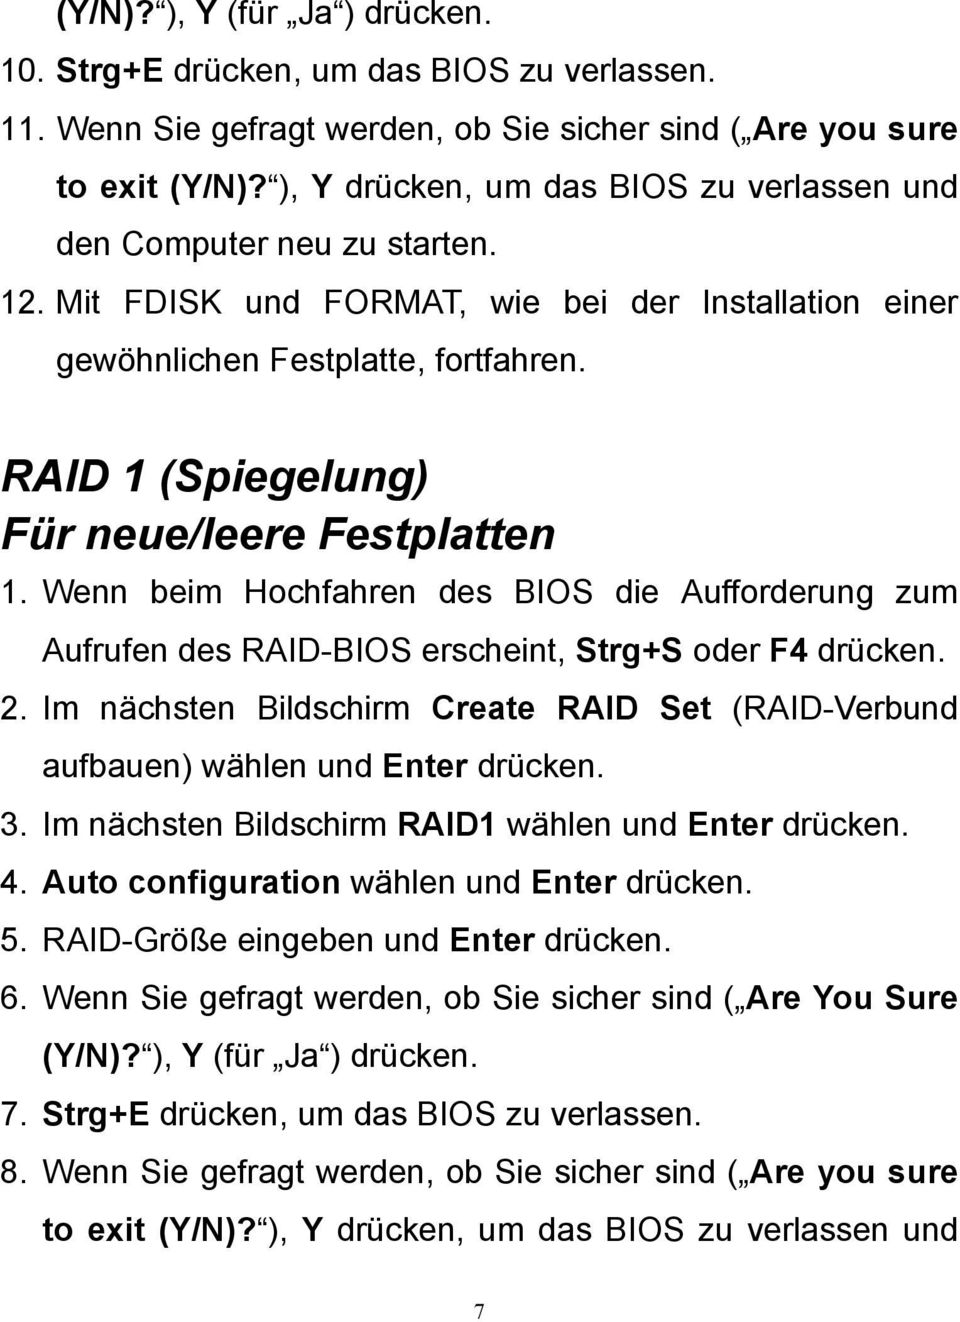 RAID 1 (Spiegelung) Für neue/leere Festplatten 1. Wenn beim Hochfahren des BIOS die Aufforderung zum Aufrufen des RAID-BIOS erscheint, Strg+S oder F4 drücken. 2.